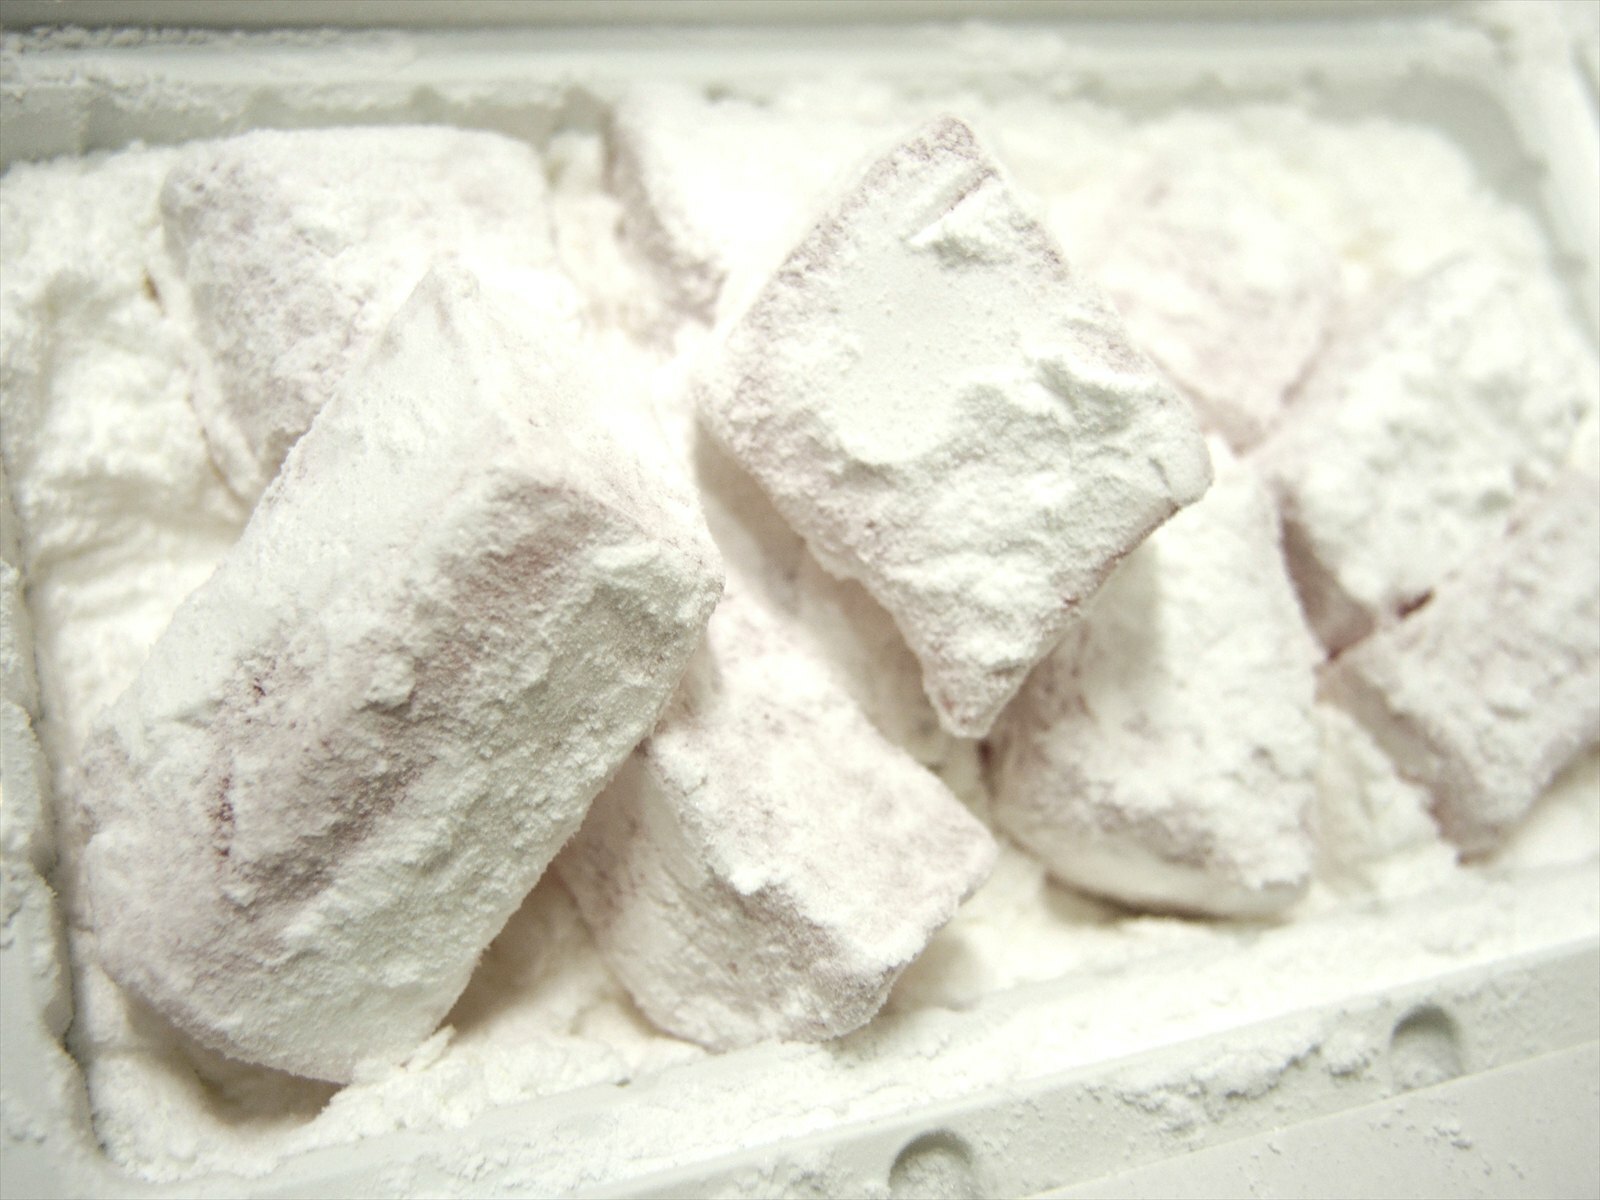 純白の砂糖で、まぶされたギリシアのロクム